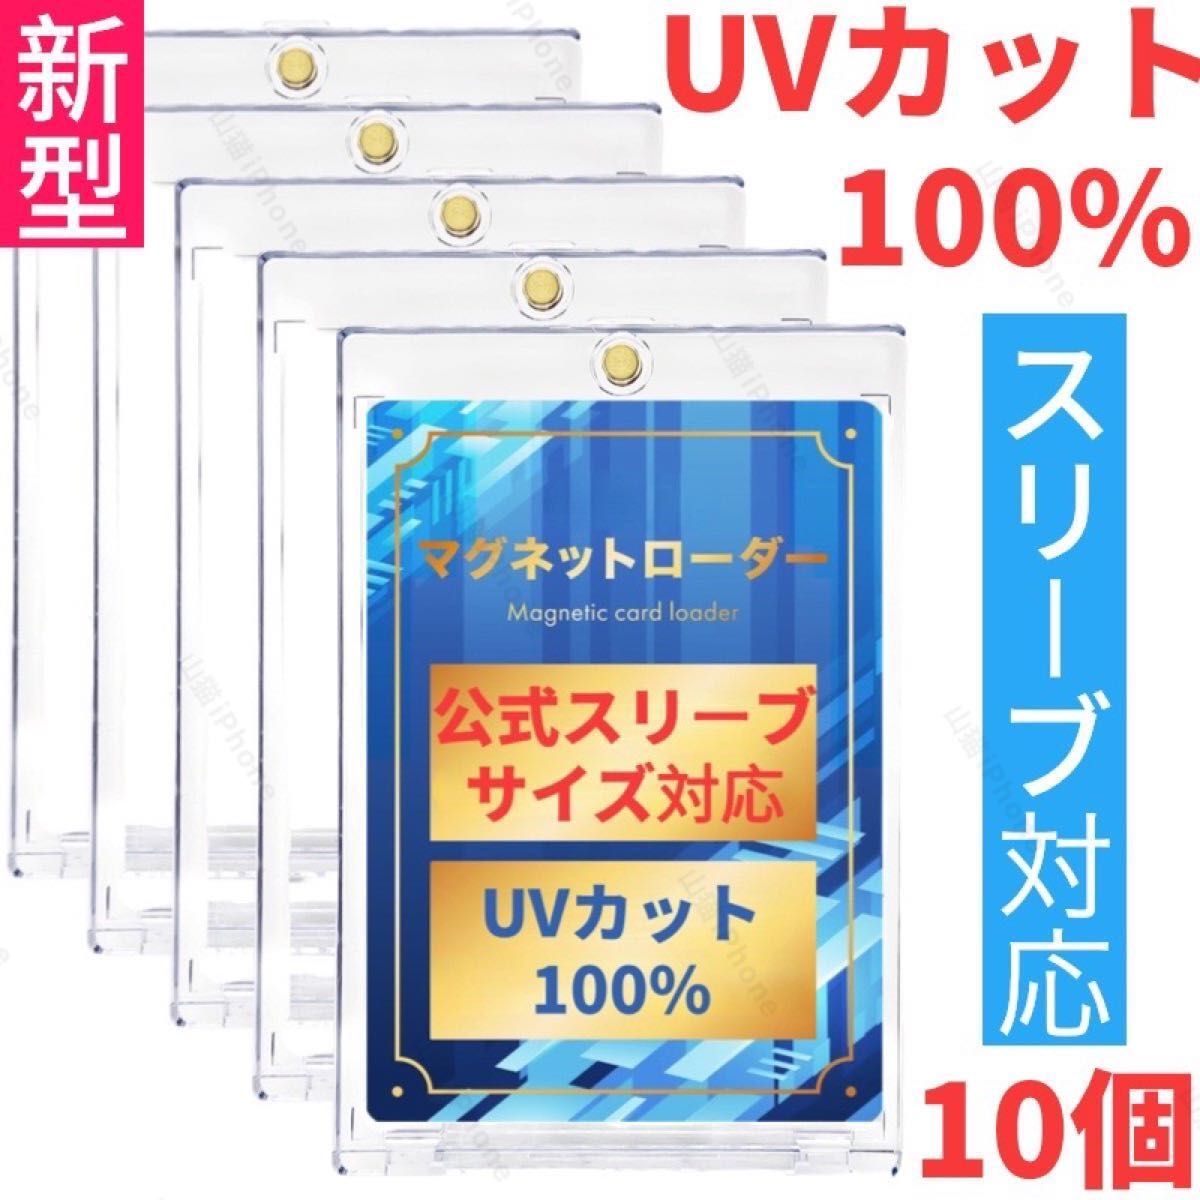 マグネットローダー　カードローダー　カードケース　UVカット100%  公式スリーブ対応　汎用サイズ　10個